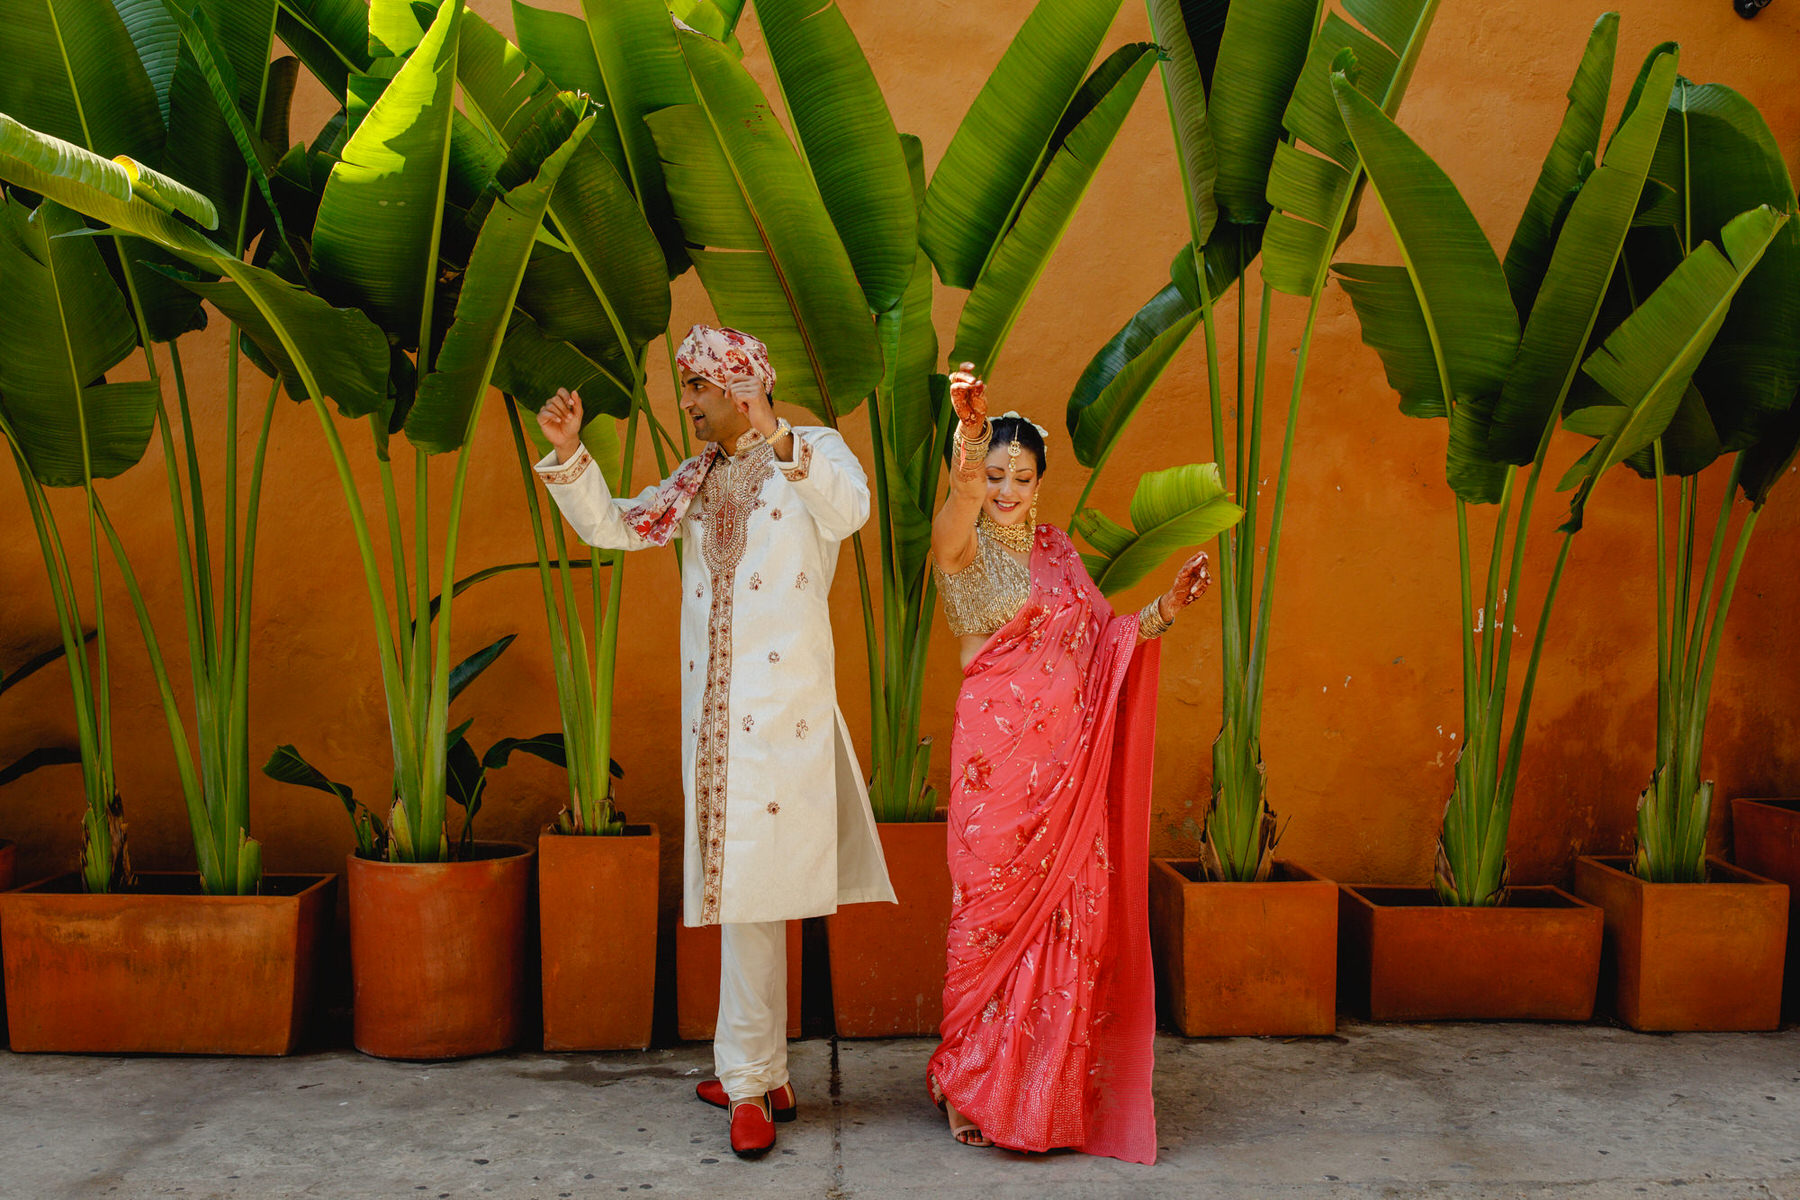 Indian wedding in Cartagena de Indias, Colombia